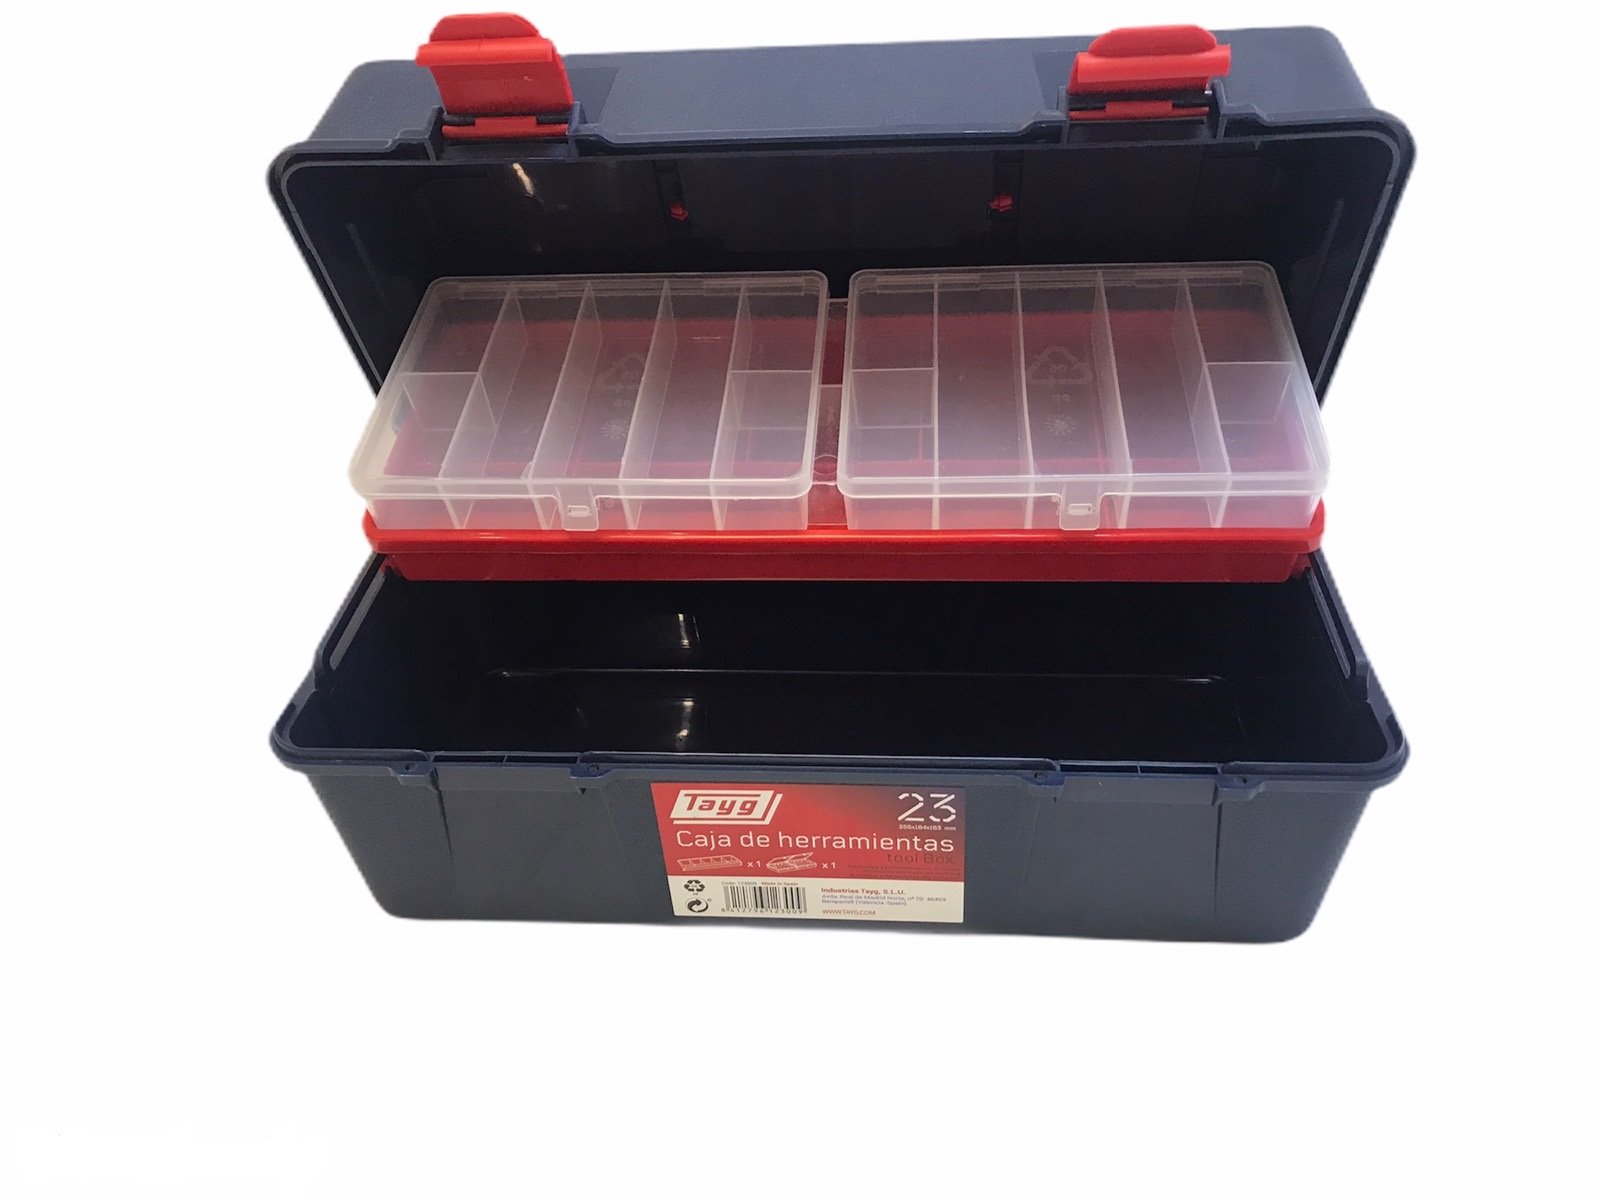 Ящик пластиковий для інструментів Tayg Box 23 Caja htas, з 2 органайзерами, 35,6х18,4х16,3 см, синій (123009) - фото 3